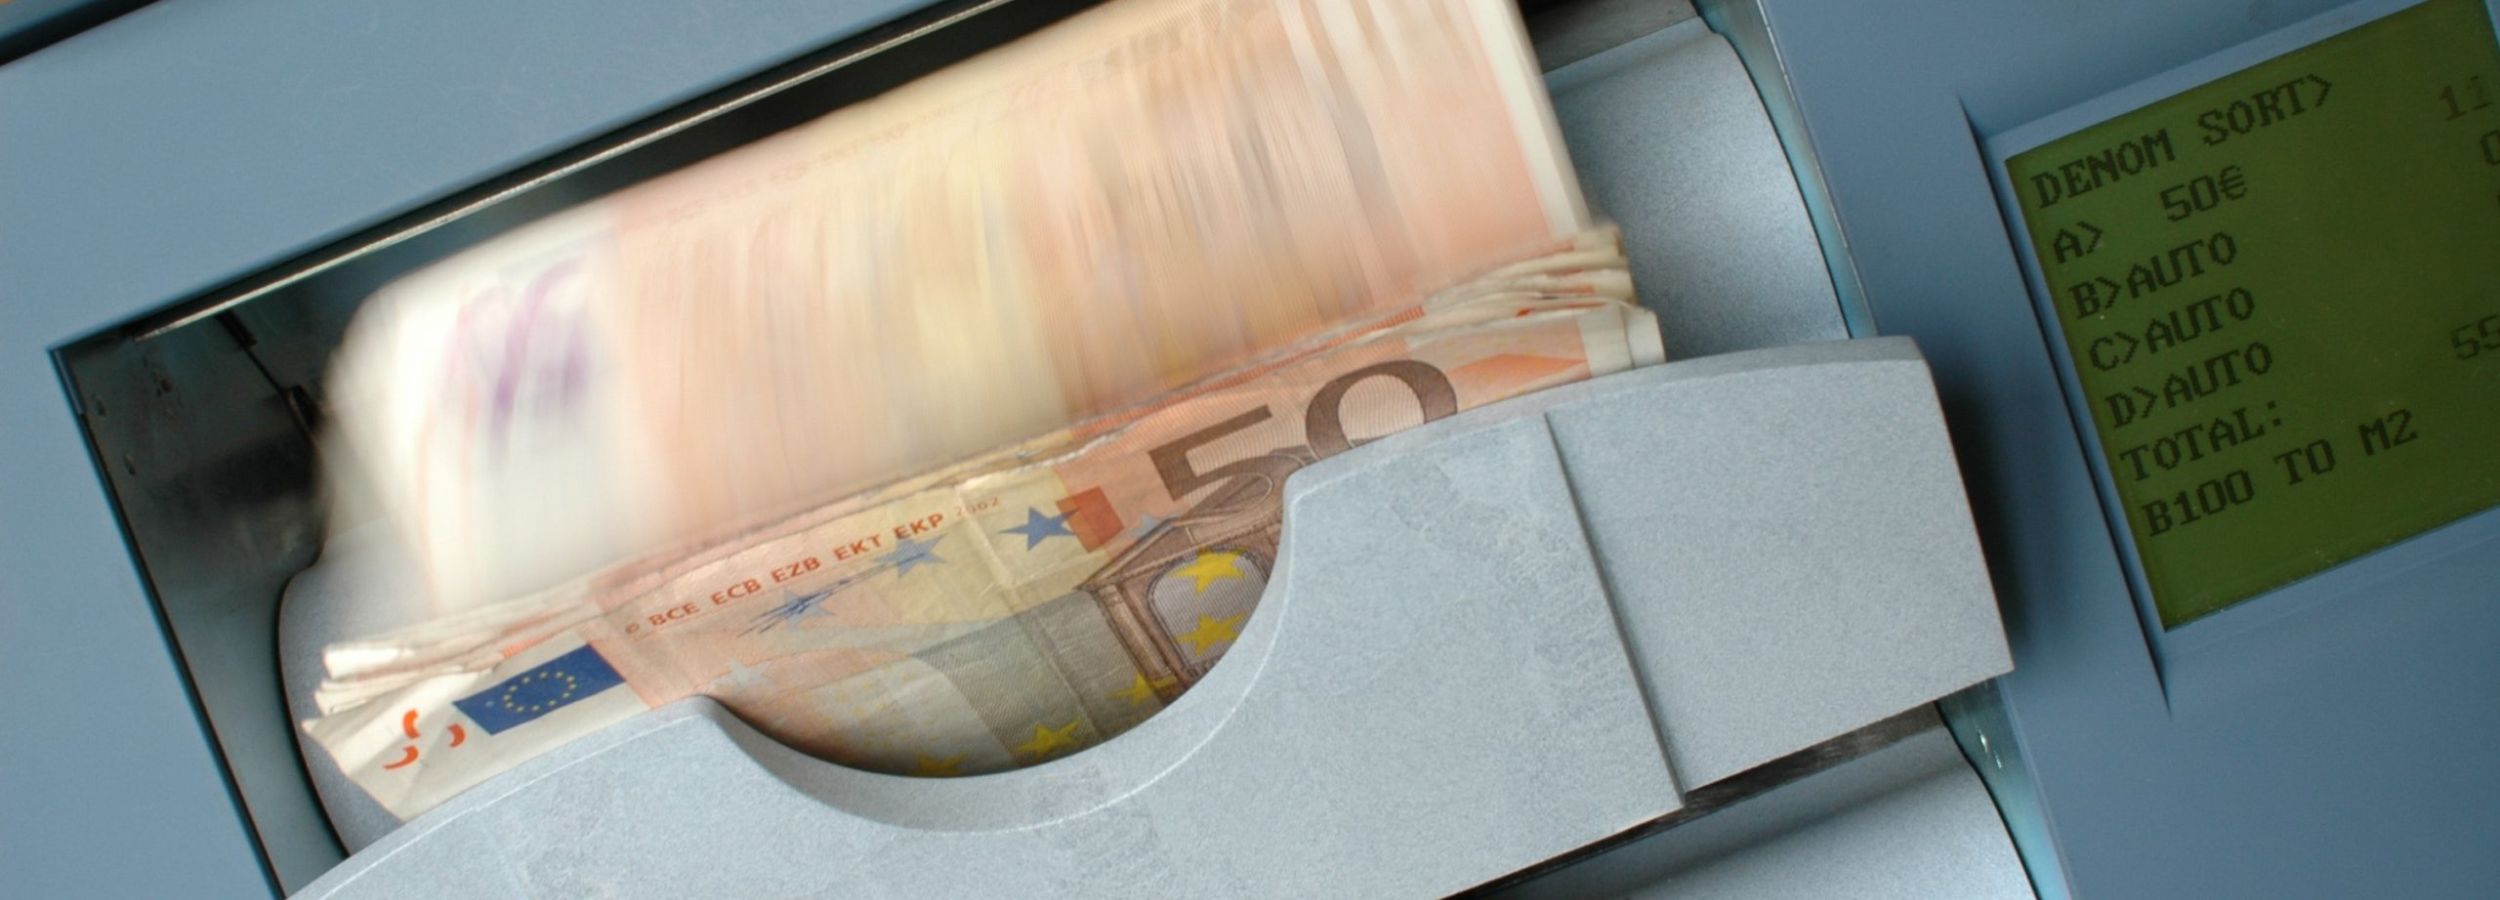 Aide Financier Prêt Argent Euro